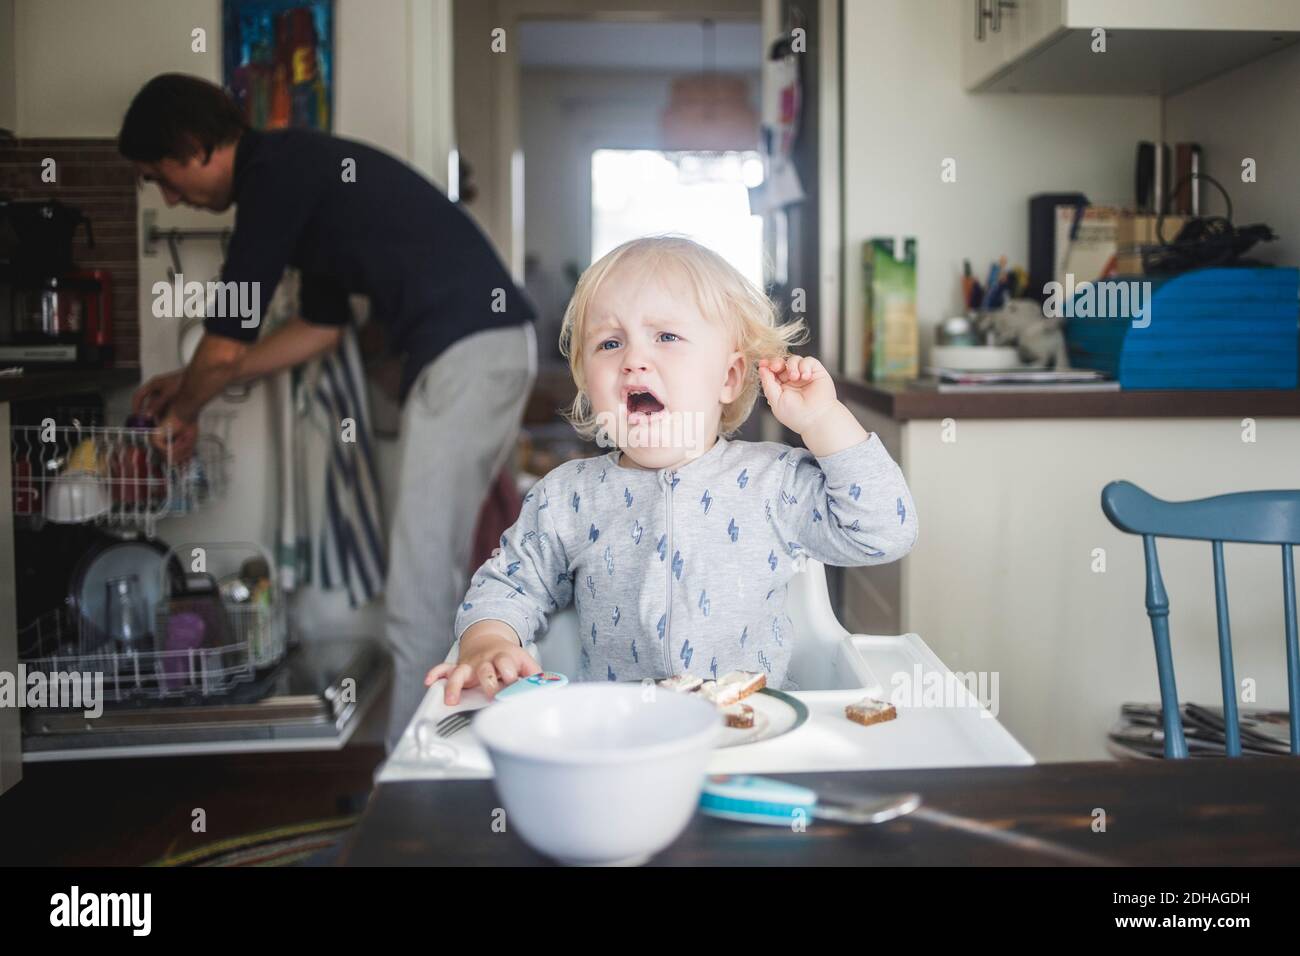 Weinendes männliches Kleinkind, das wegschaut, während es auf einem Hochstuhl sitzt In der Küche in der Wohnung Stockfoto